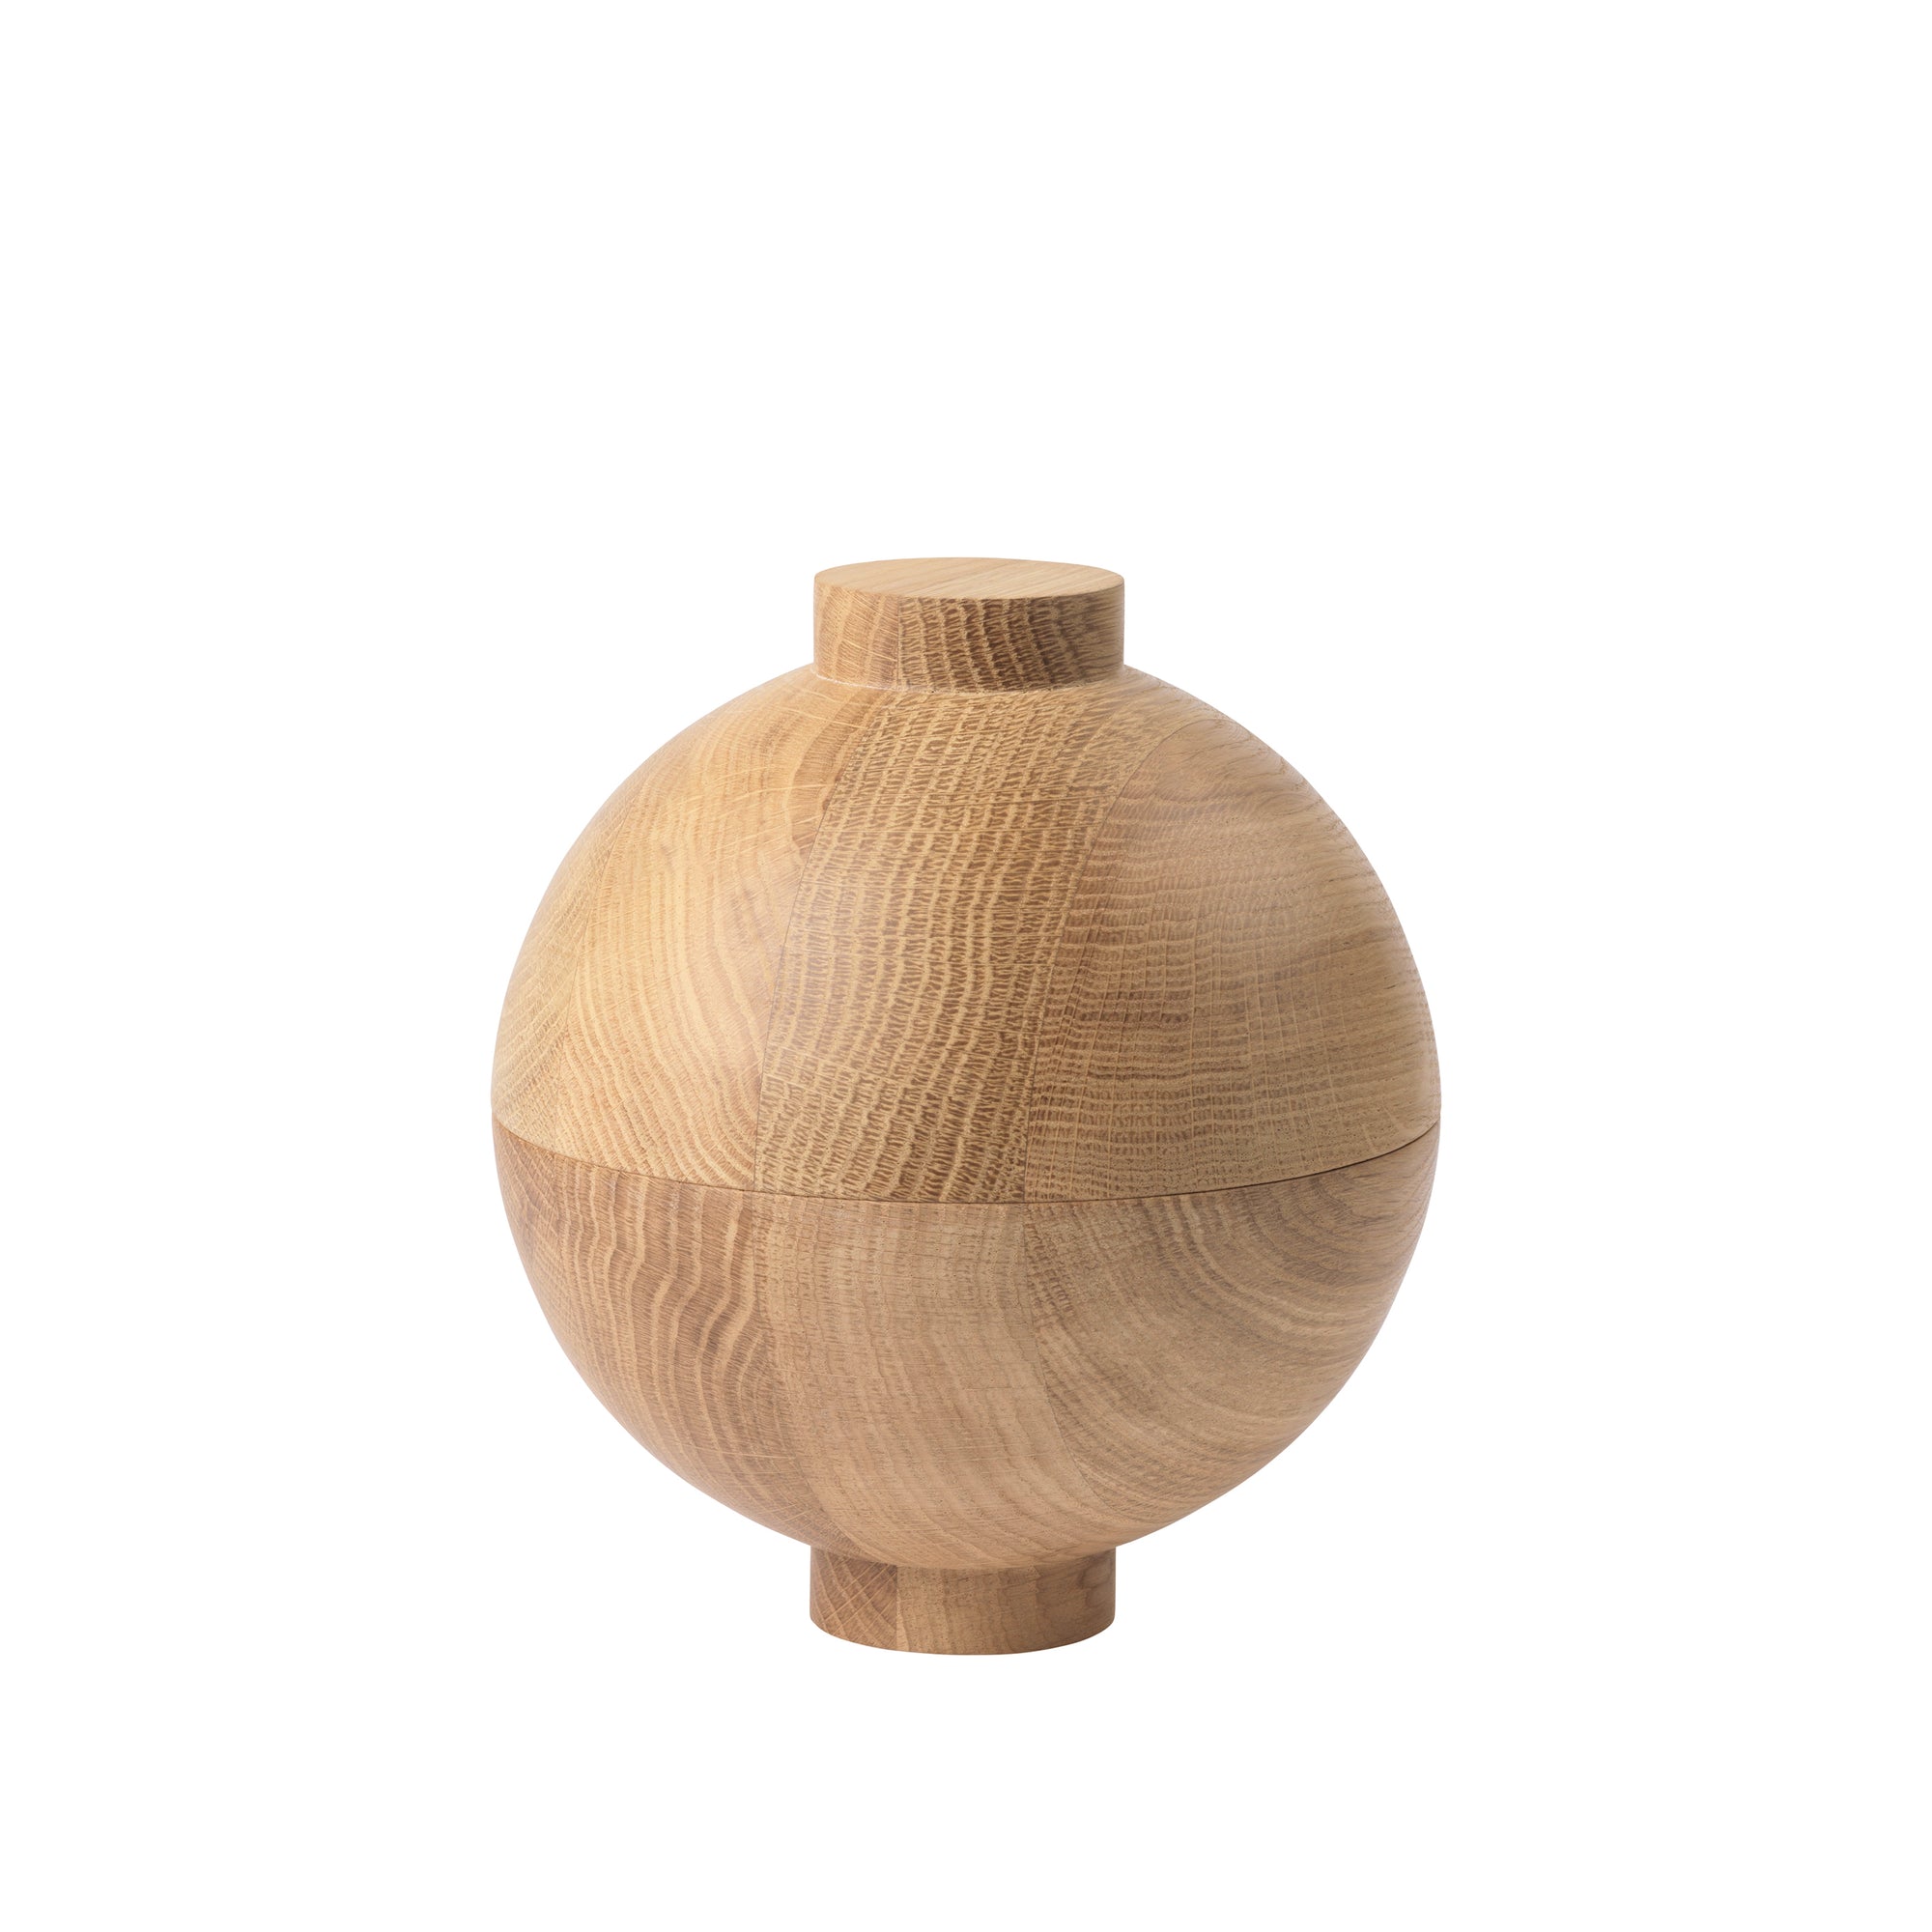 XL Wooden Sphere